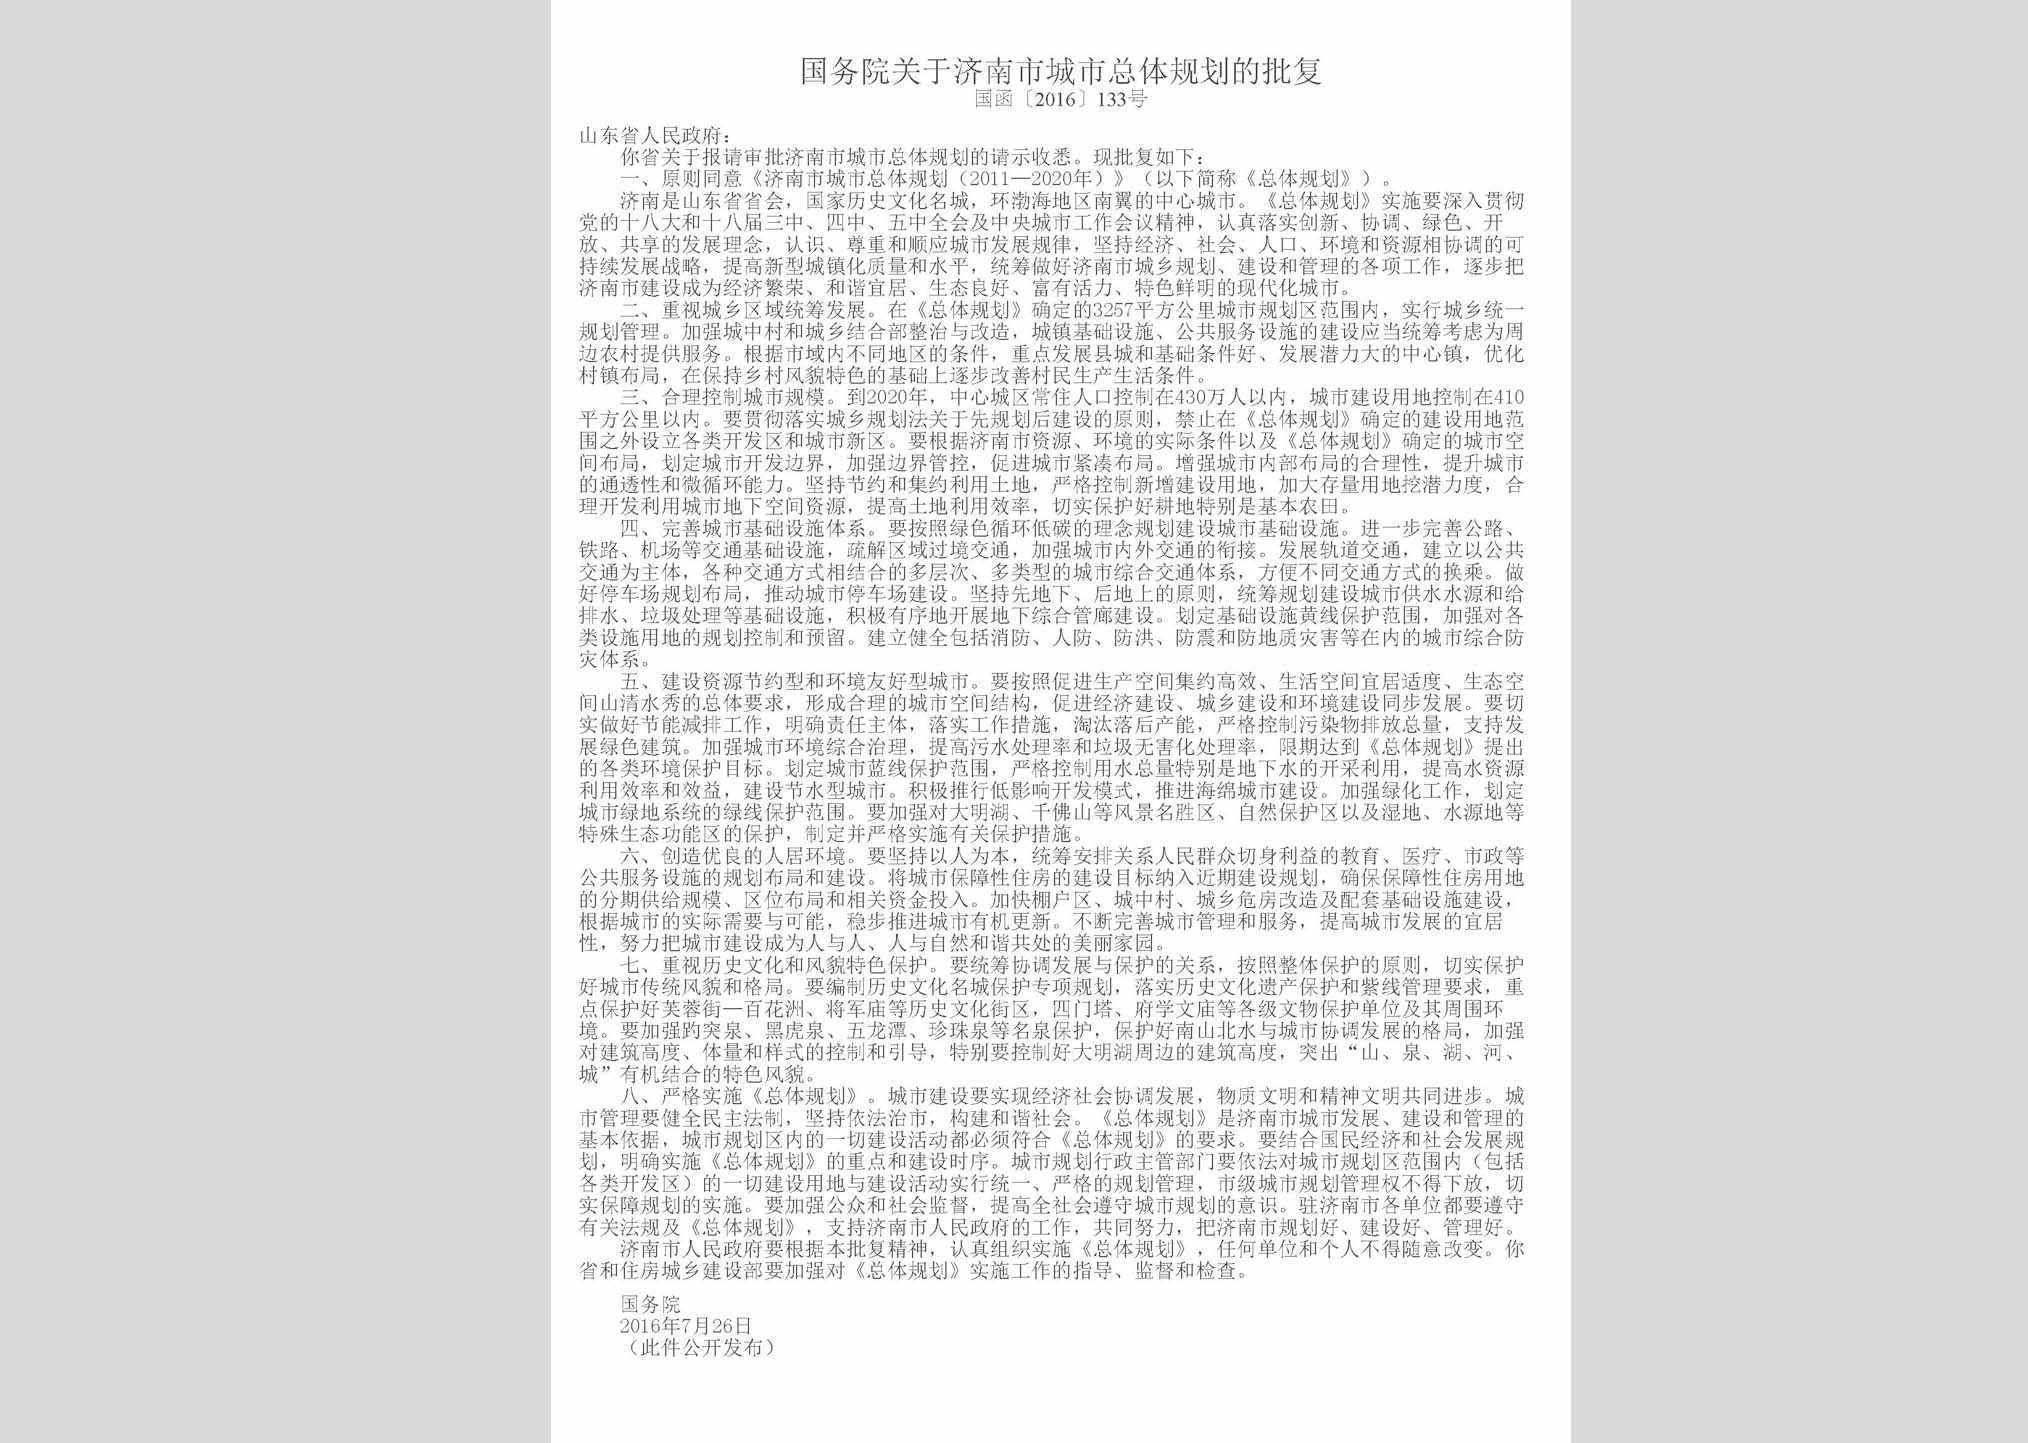 国函[2016]133号：国务院关于济南市城市总体规划的批复